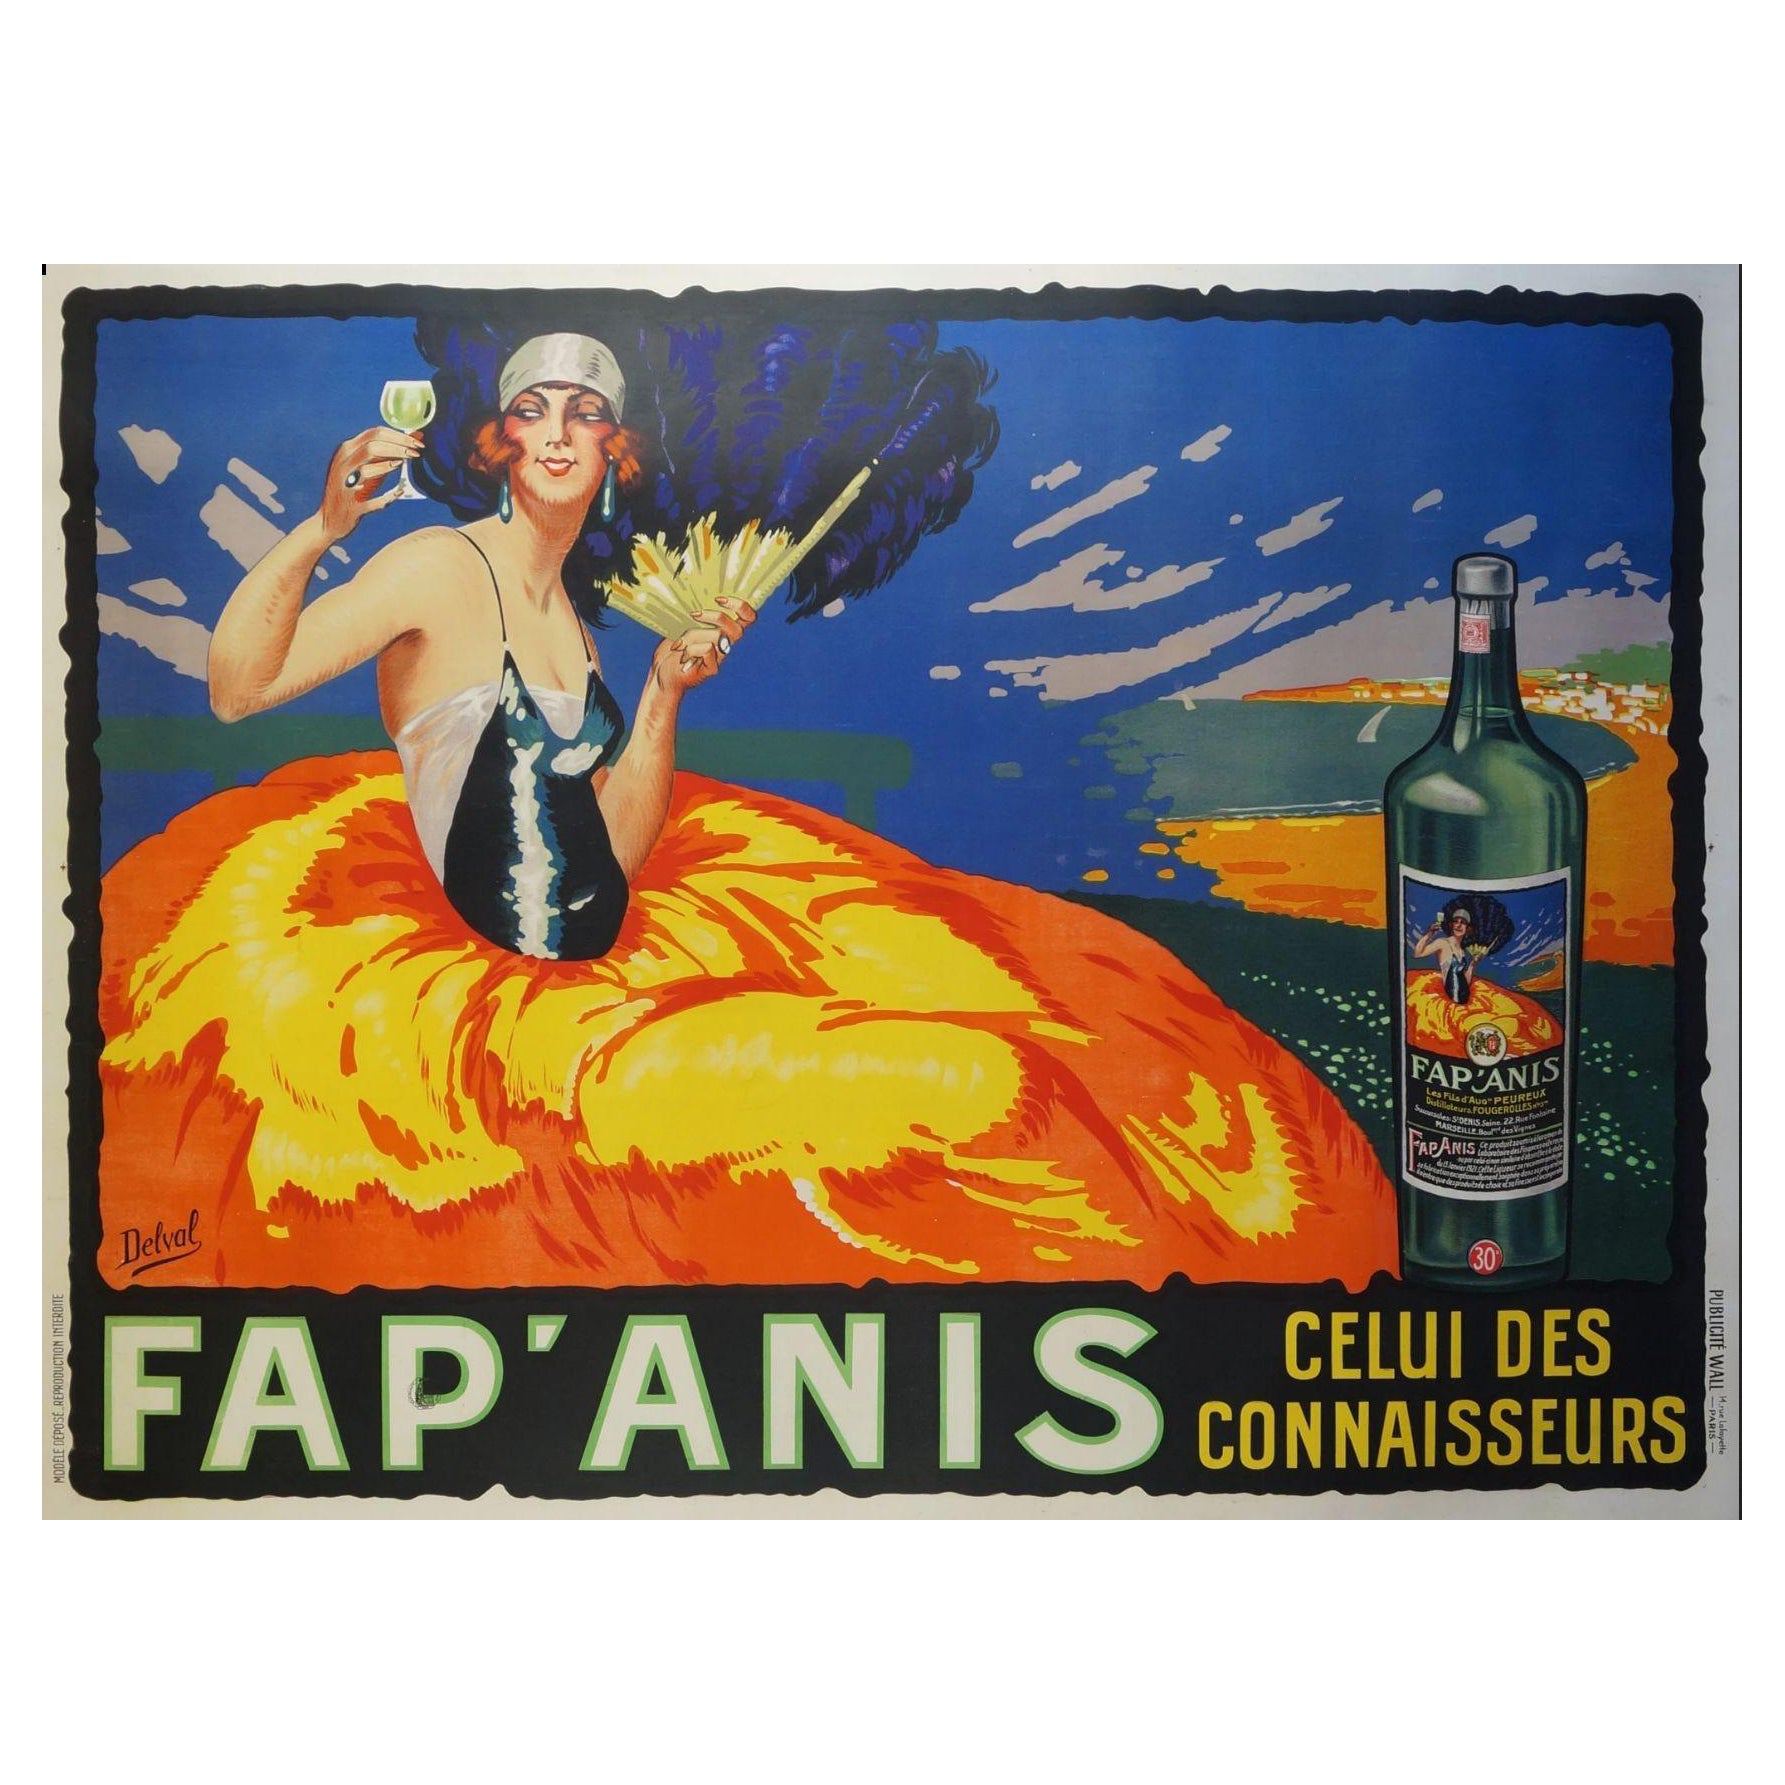 Grande affiche publicitaire pour la boisson Fap'anis, vers 1930